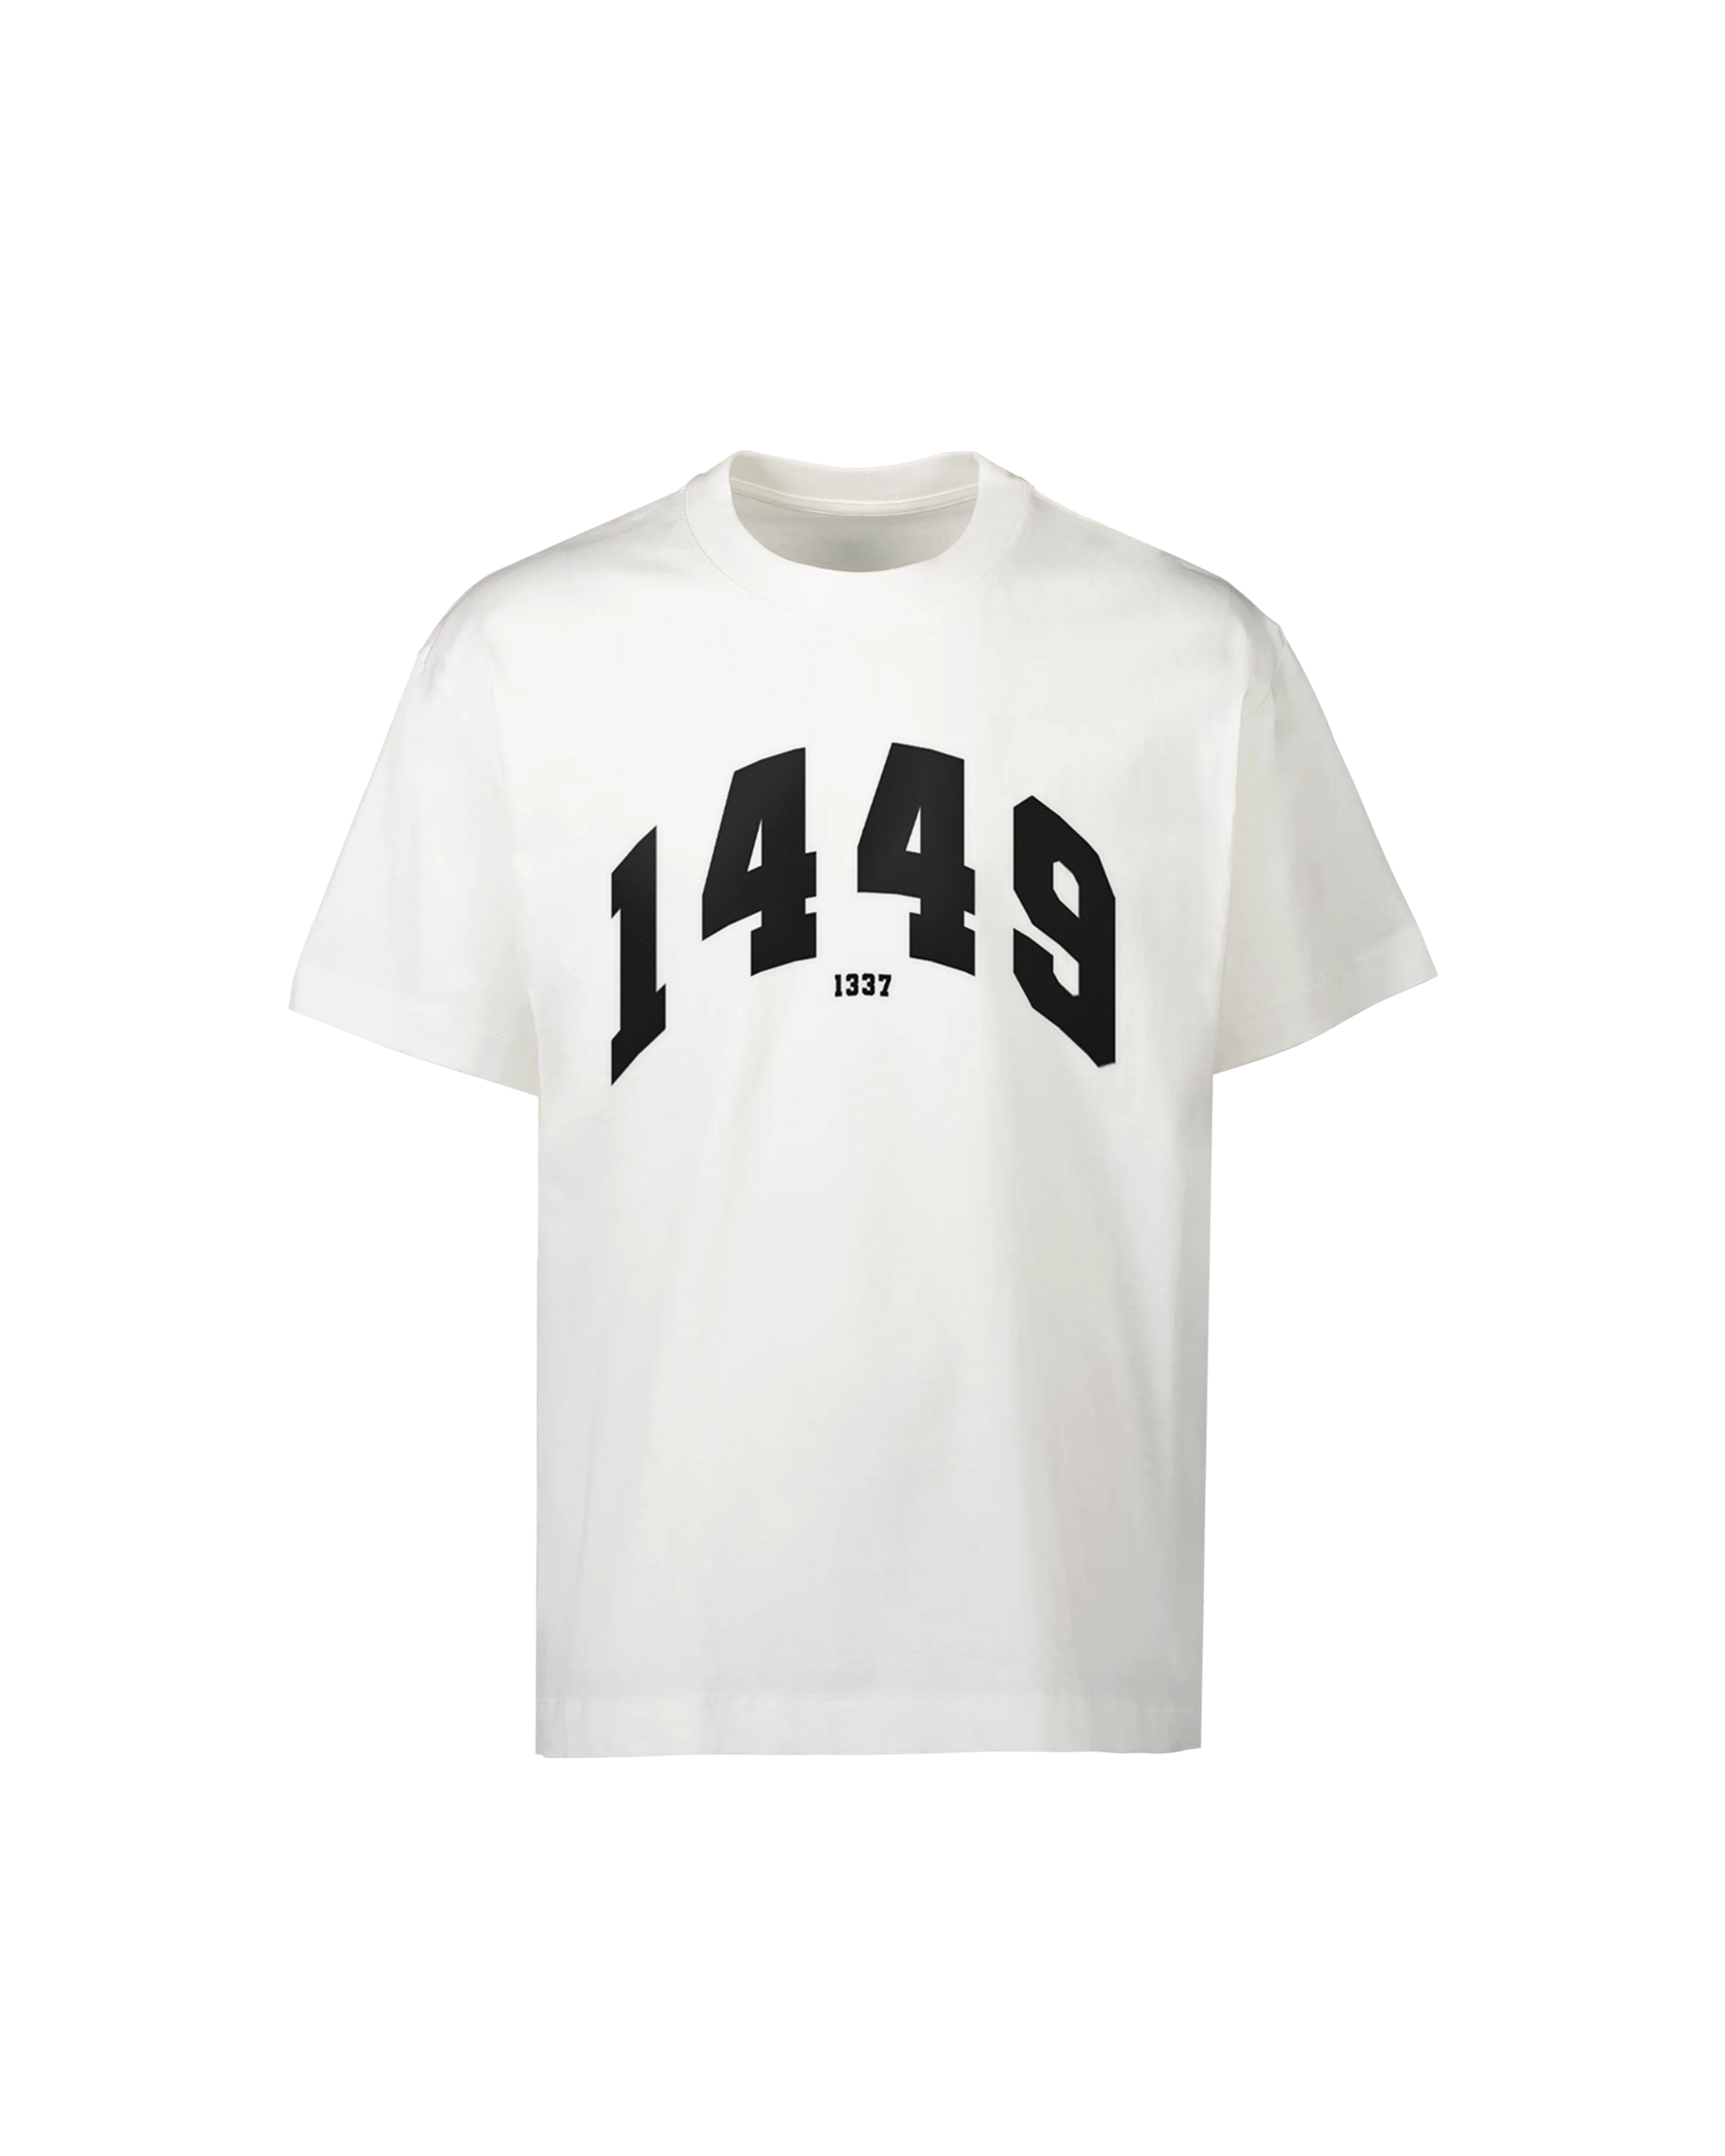 1449 > 1337 T-Shirt